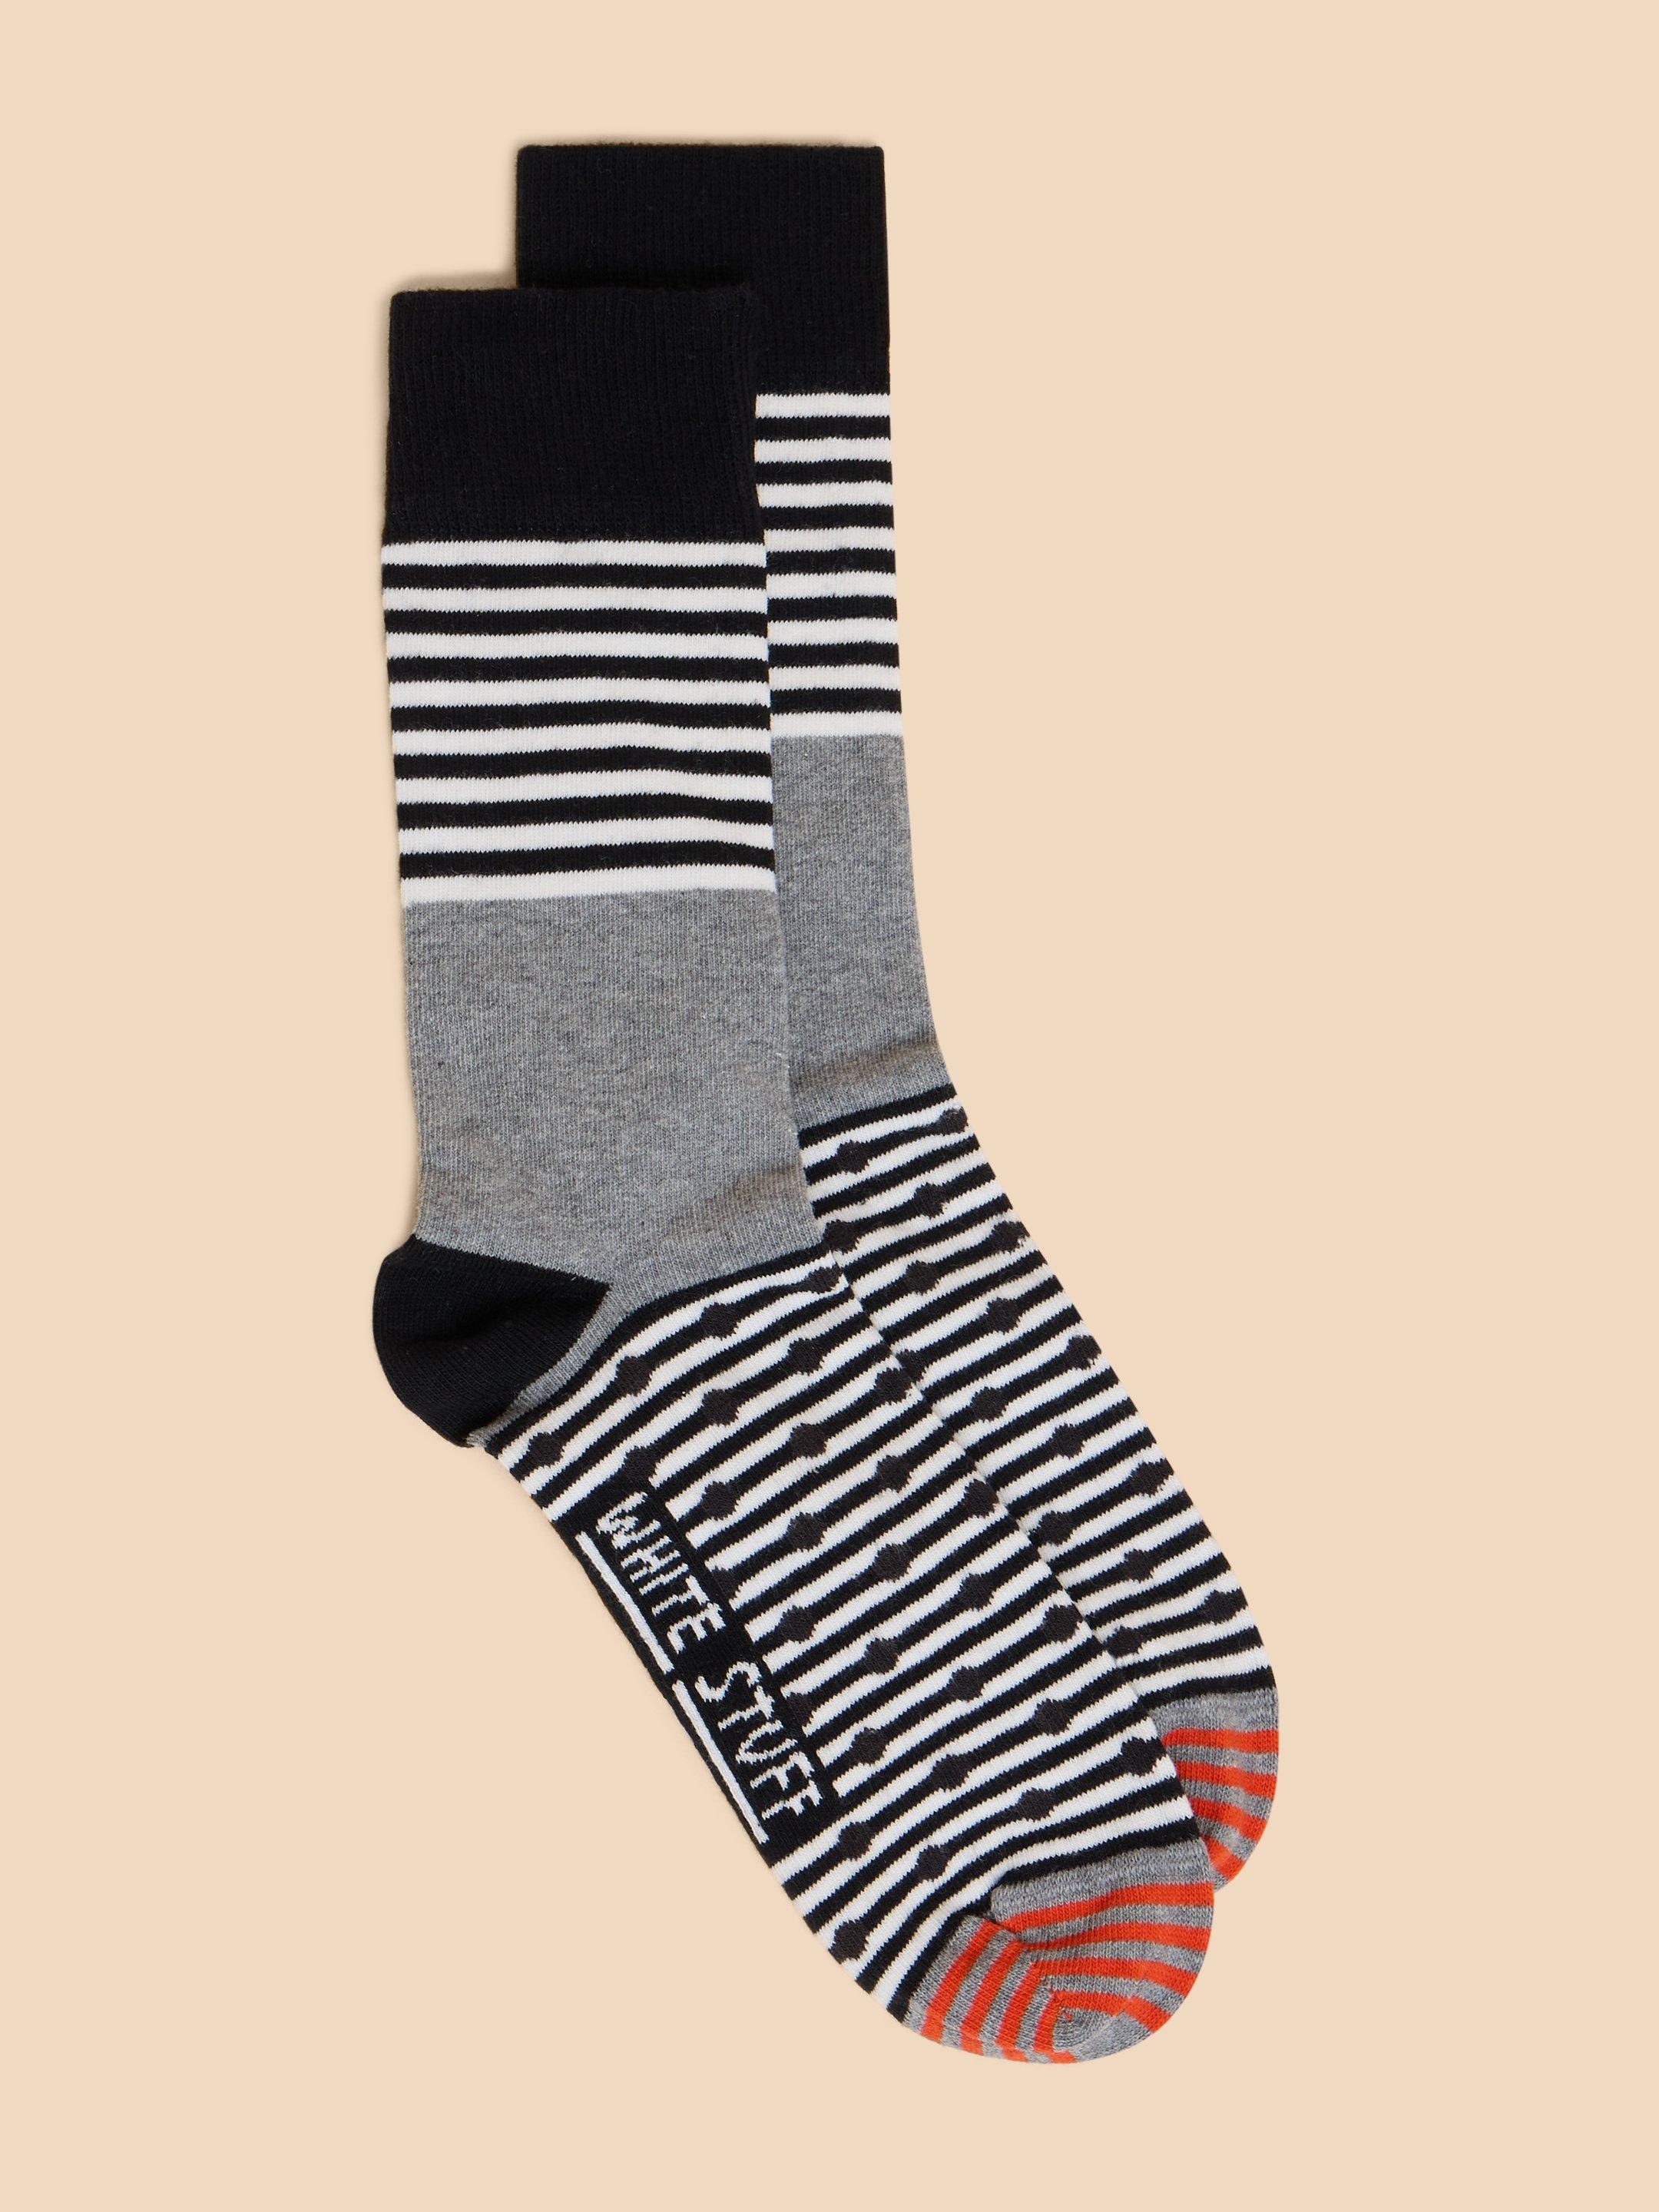 Hotch Potch Ankle Sock